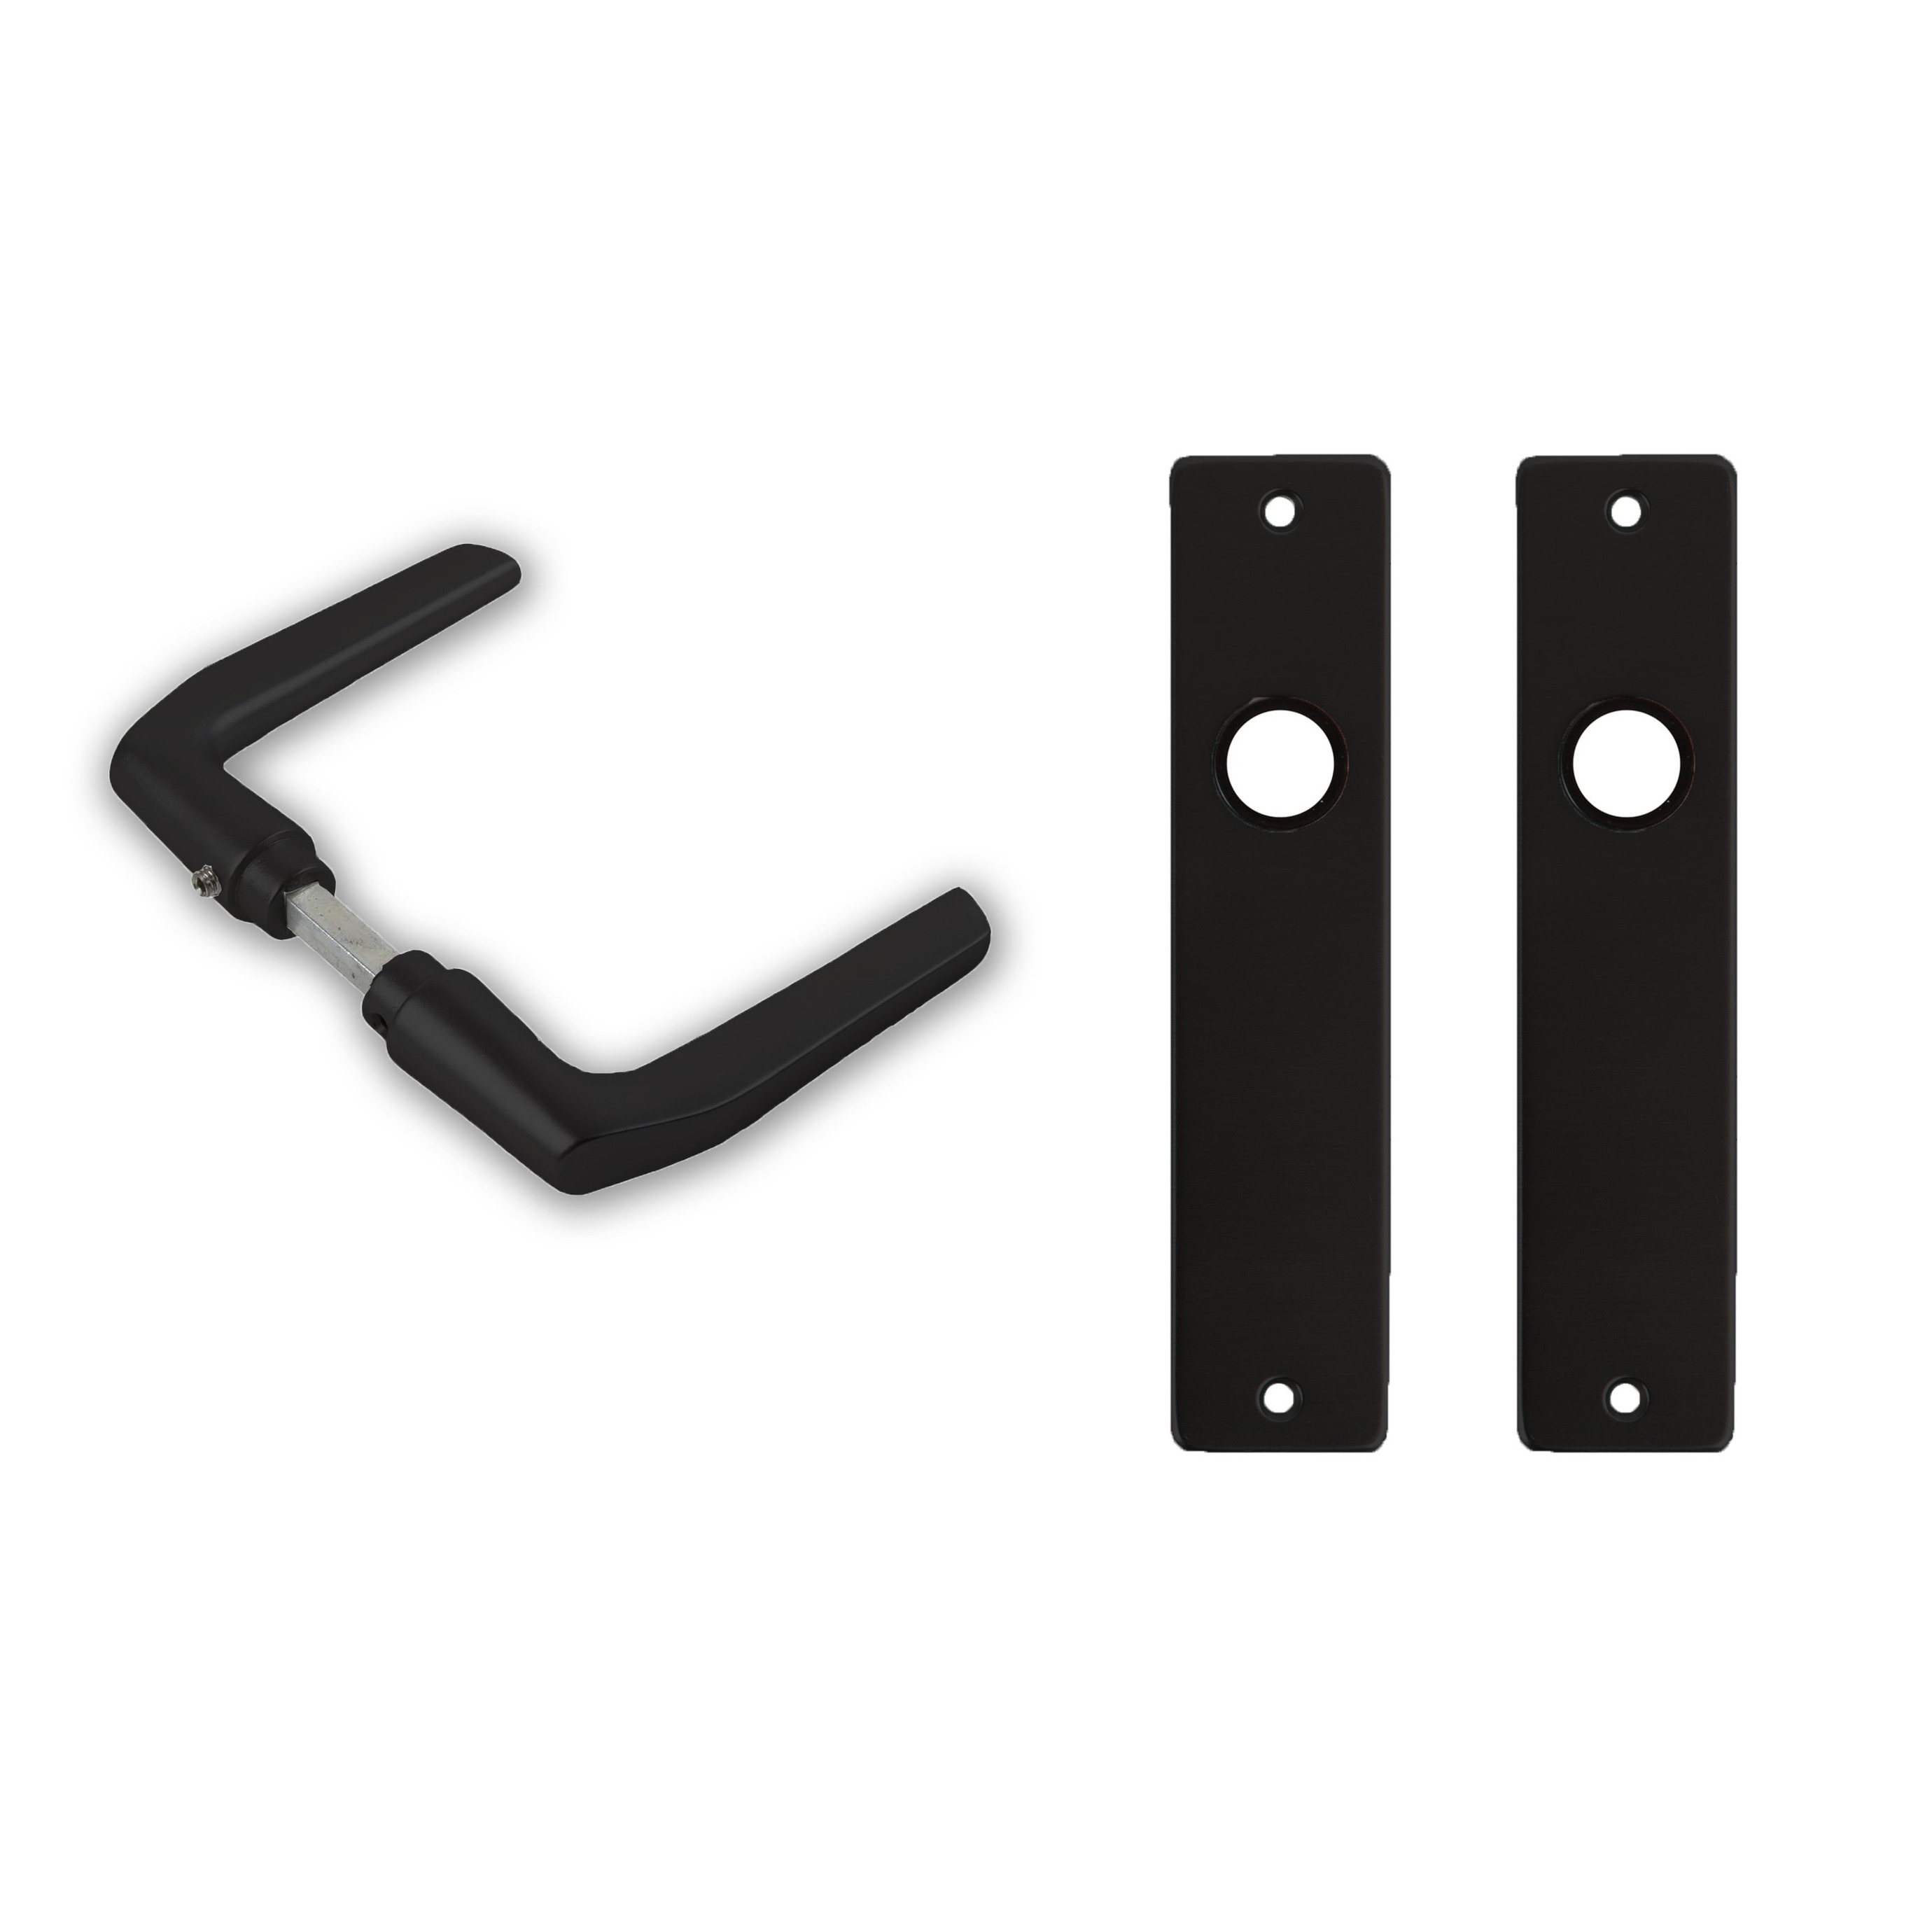 1x paar deurkrukset-deurgarnituur zwart met zwarte deurklinken en deurschilden